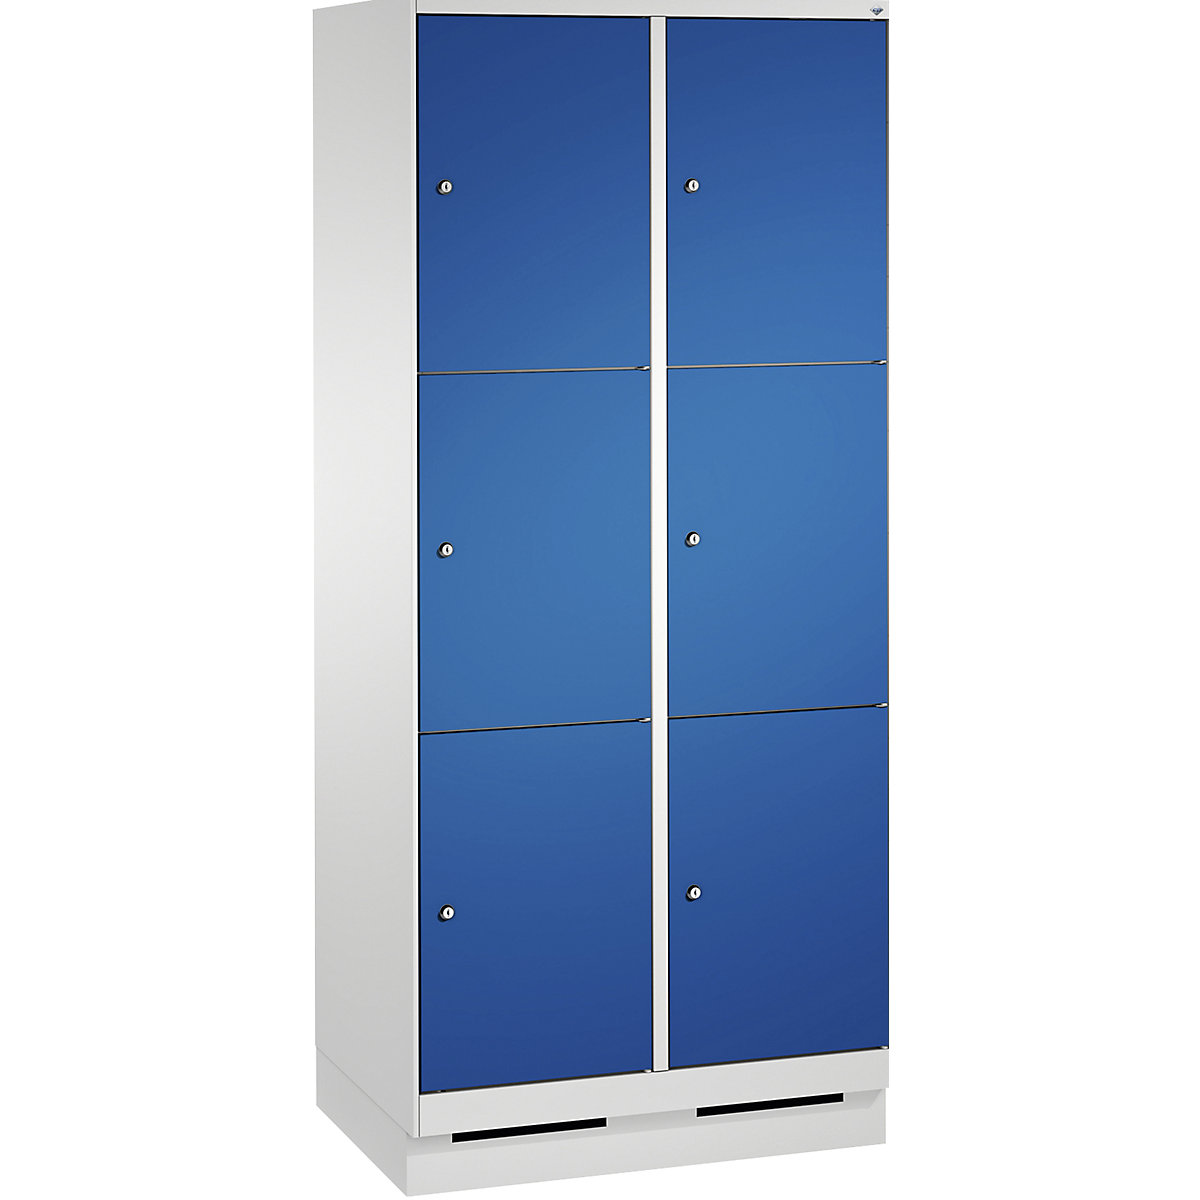 Armoire à casiers sur socle EVOLO – C+P, 2 compartiments, 3 casiers chacun, largeur compartiments 400 mm, gris clair / bleu gentiane-12